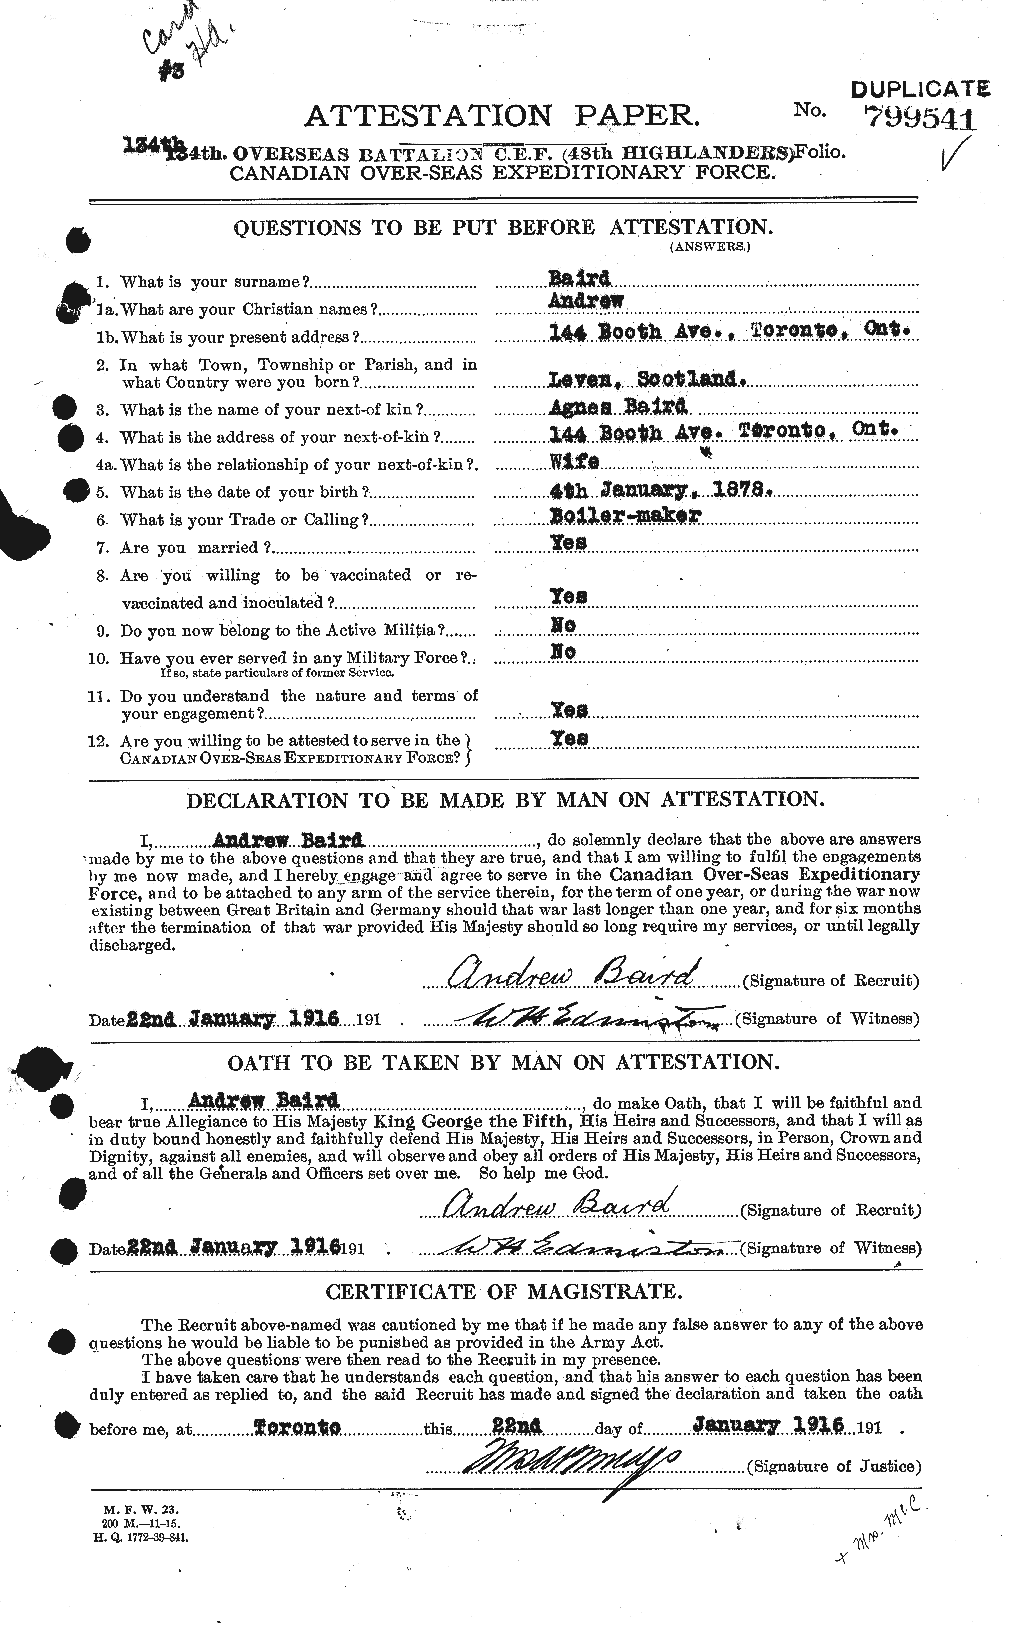 Dossiers du Personnel de la Première Guerre mondiale - CEC 226732a